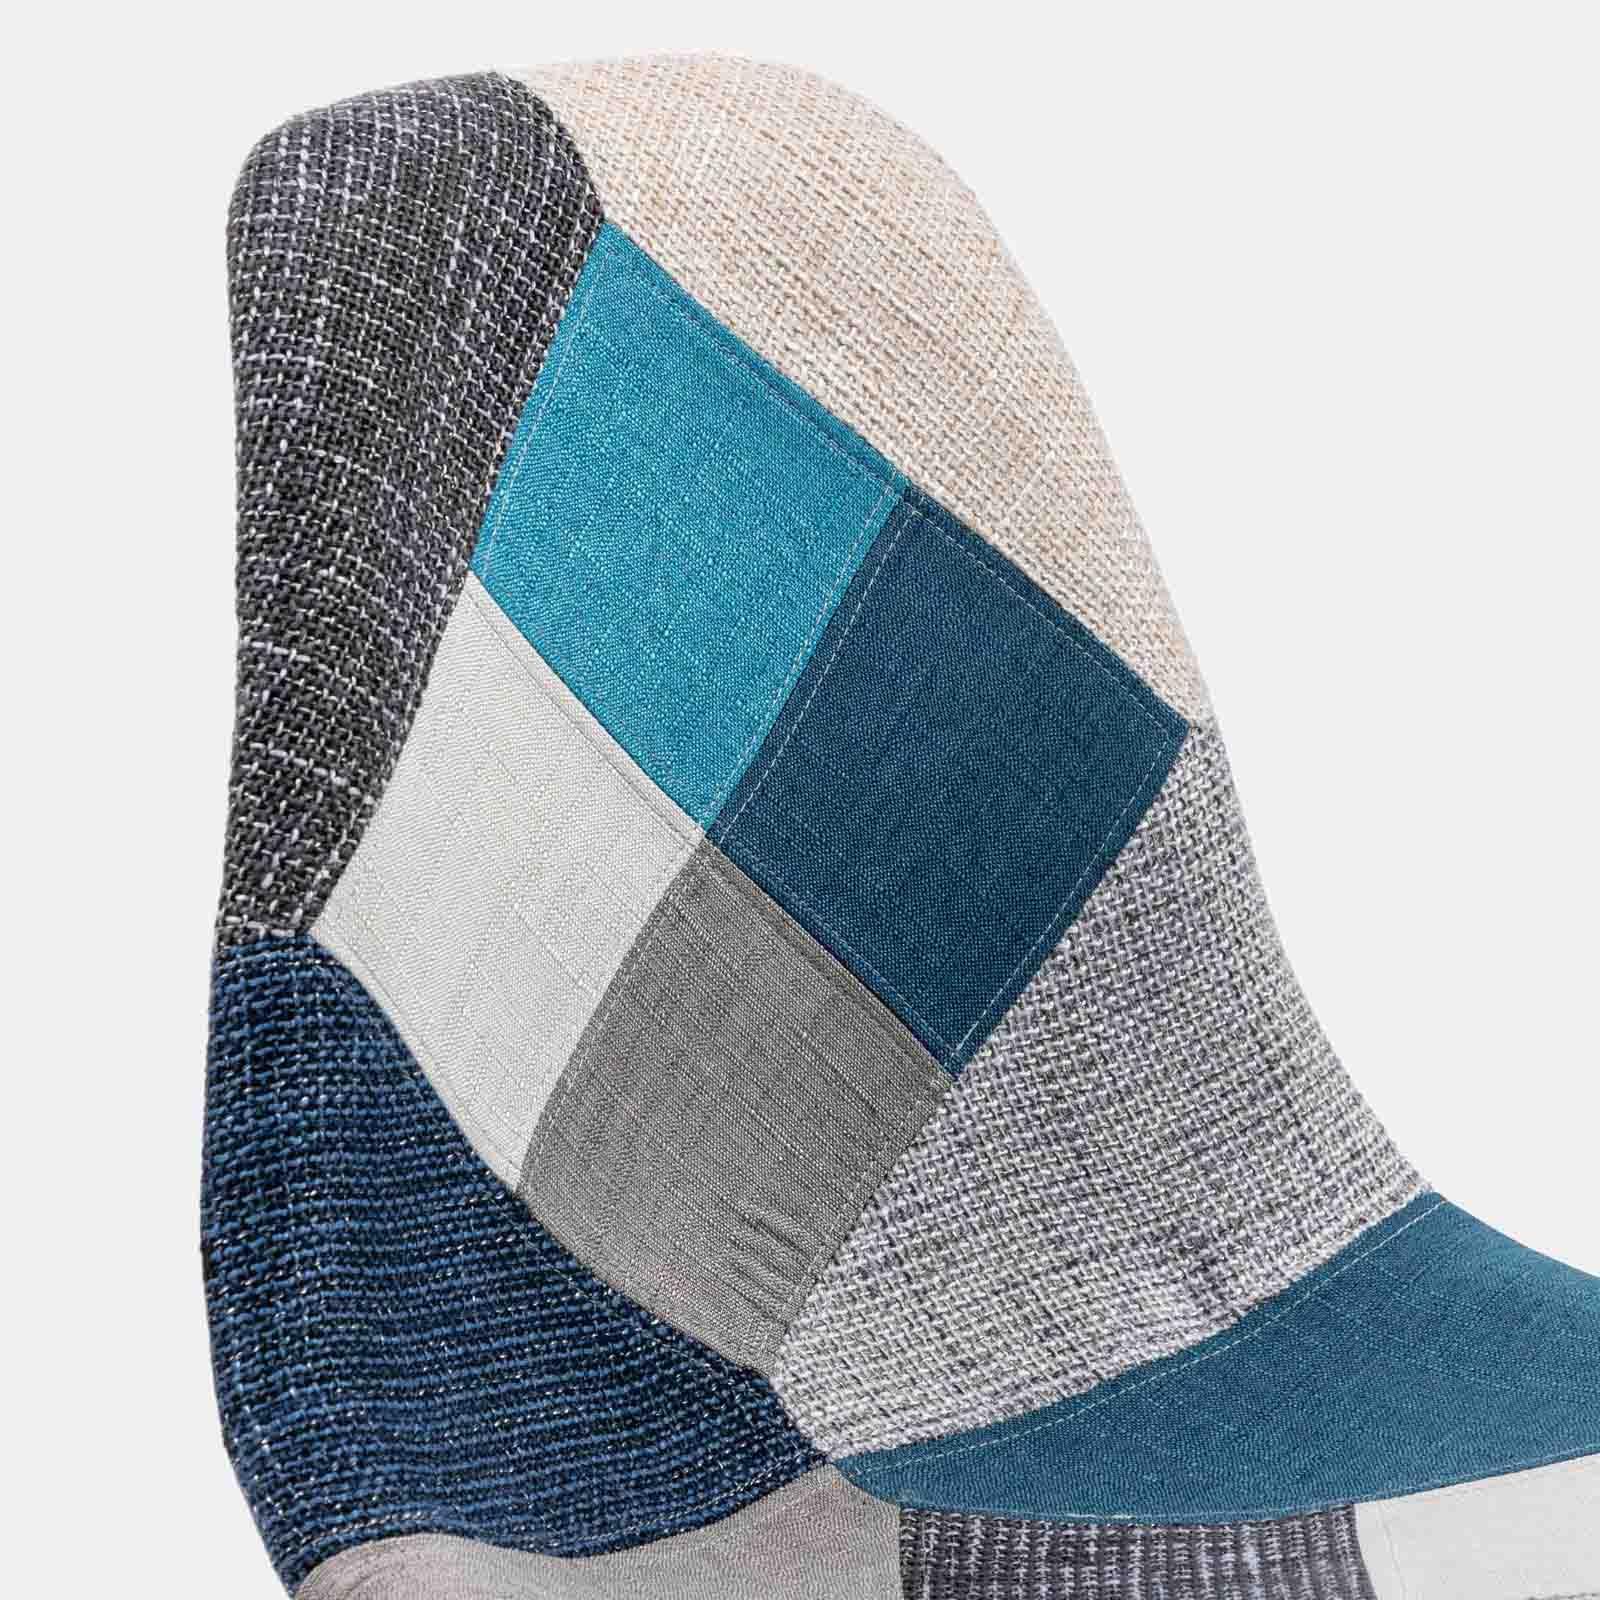 Sedia in tessuto patchwork multicolor dai toni freddi con gambe a rete -  Copenaghen